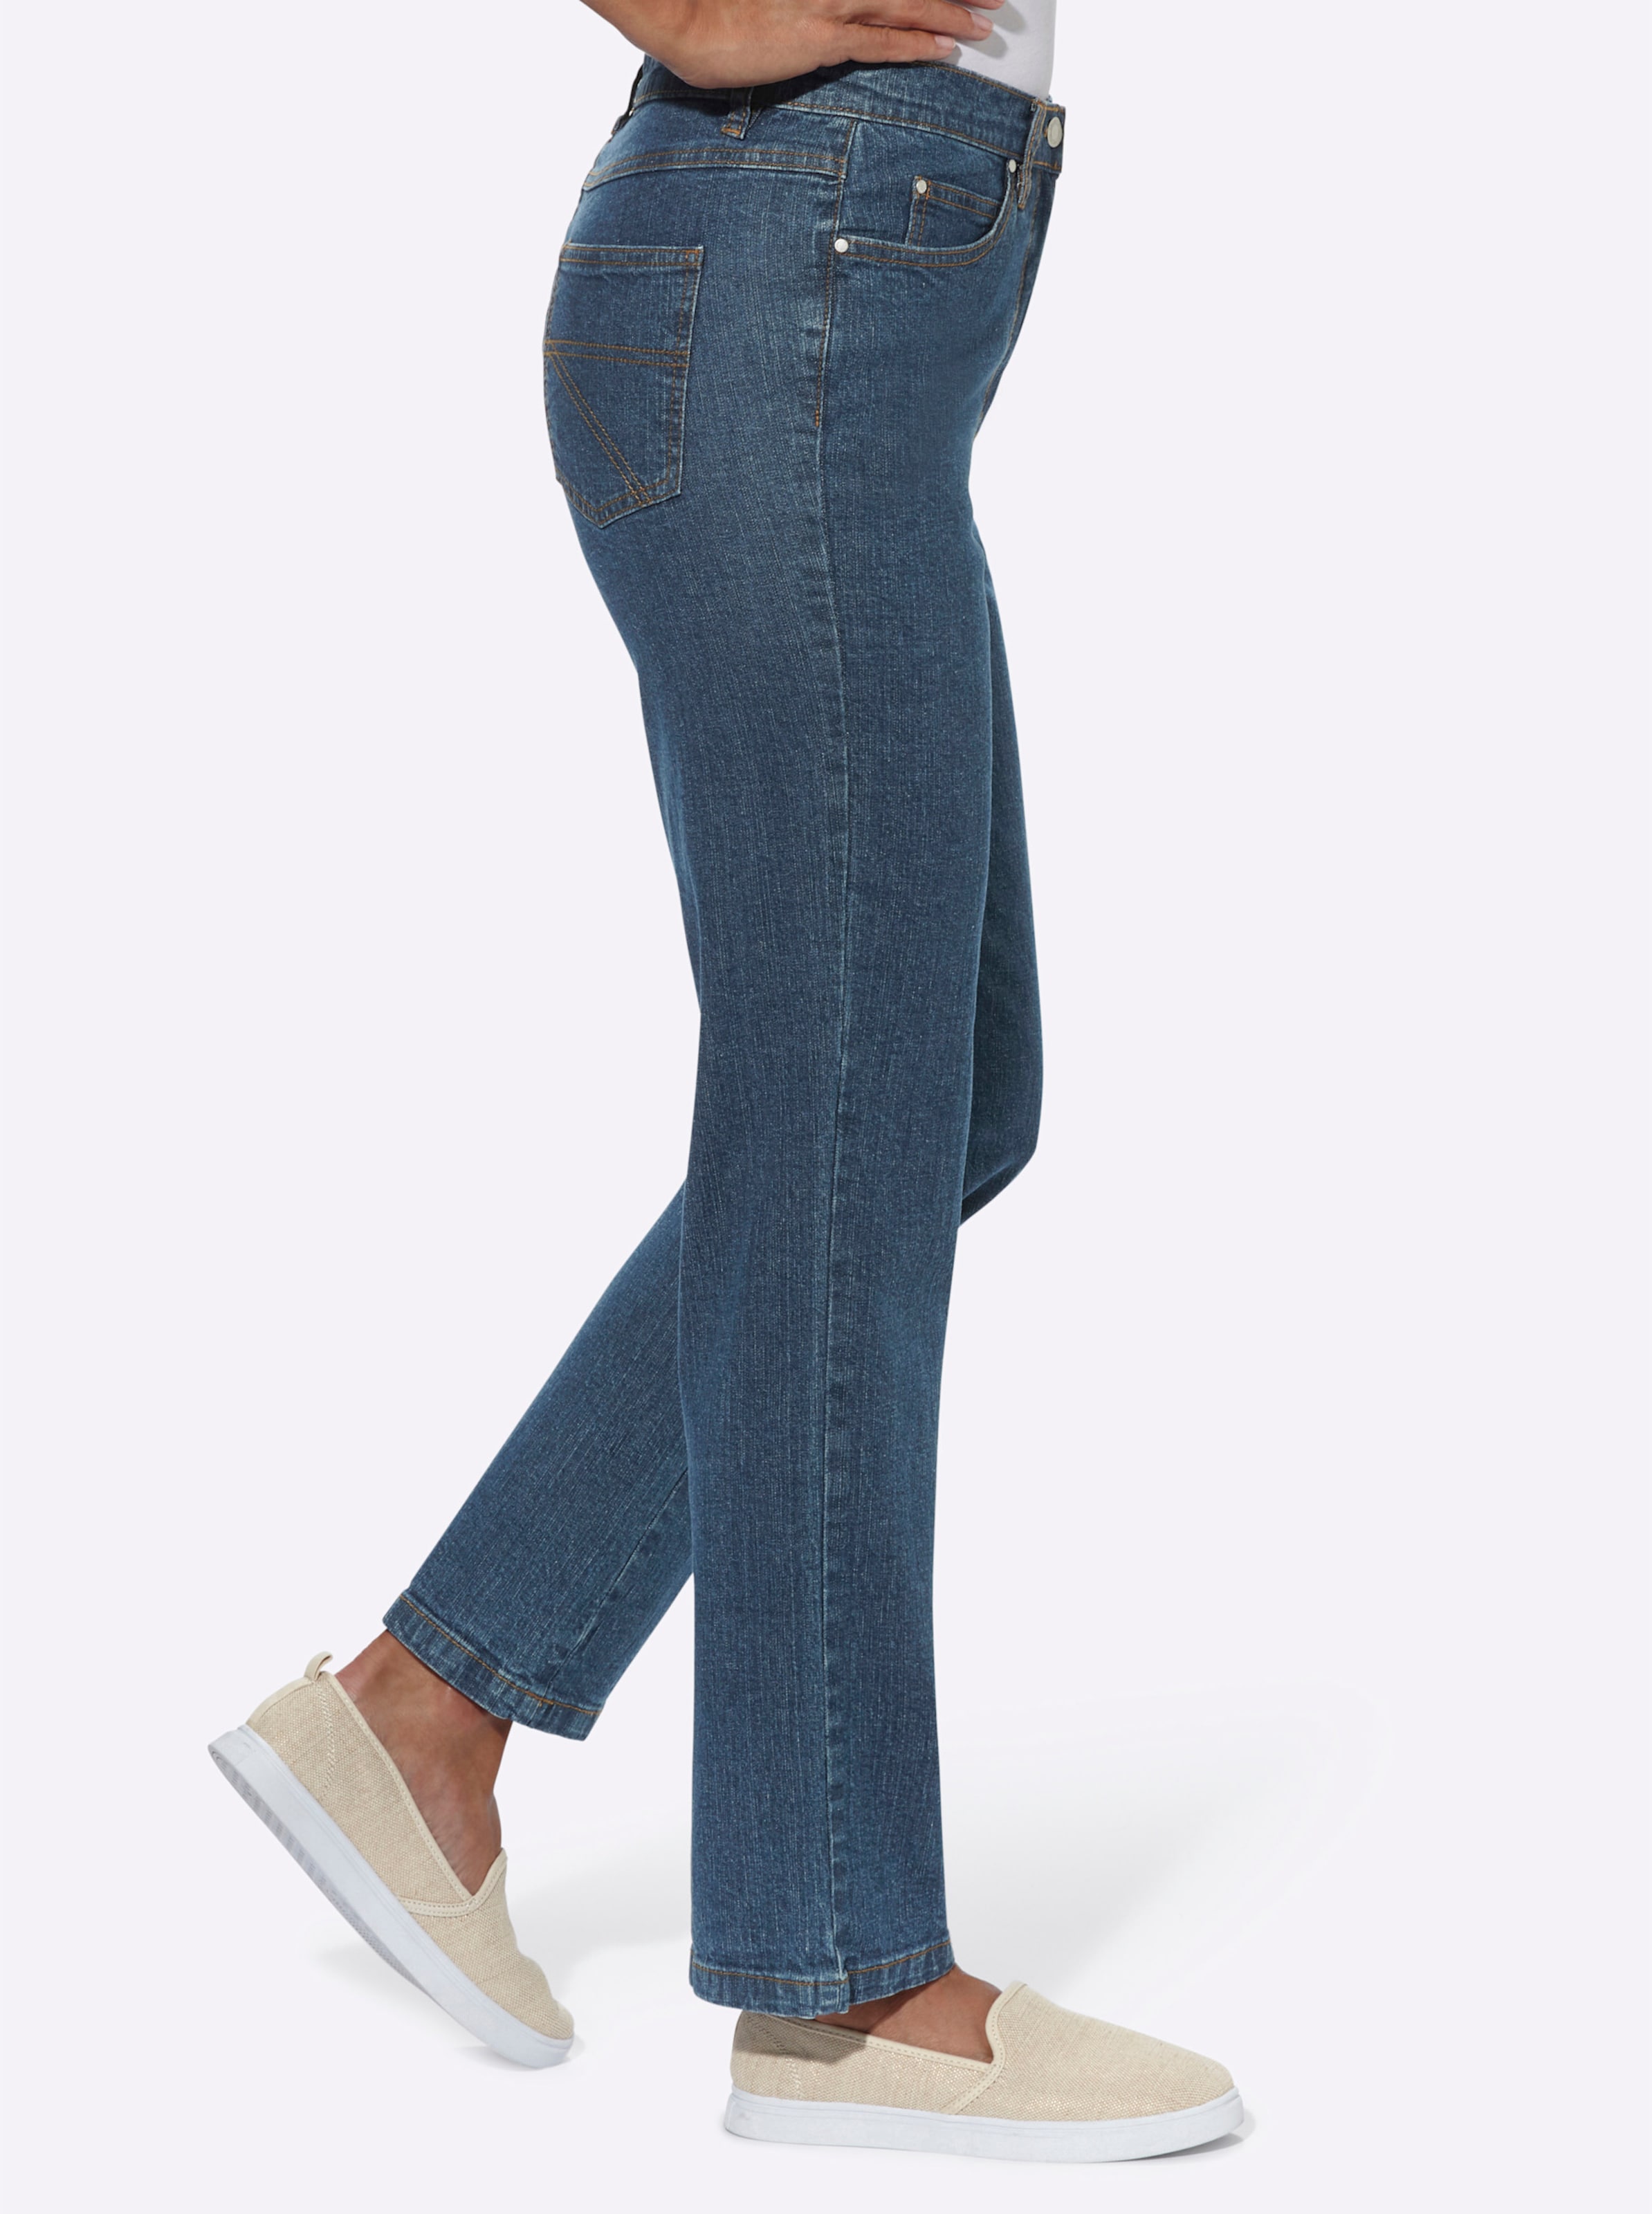 Stil for günstig Kaufen-5-Pocket-Jeans in blue-stone-washed von heine. 5-Pocket-Jeans in blue-stone-washed von heine <![CDATA[Sitzt super dank Baumwoll-Stretch: Klassische 5-Pocket Jeans mit stiltypischen Kontrastnähten. Rückwärtiger Sattel für die optimale Passform. Fußwei